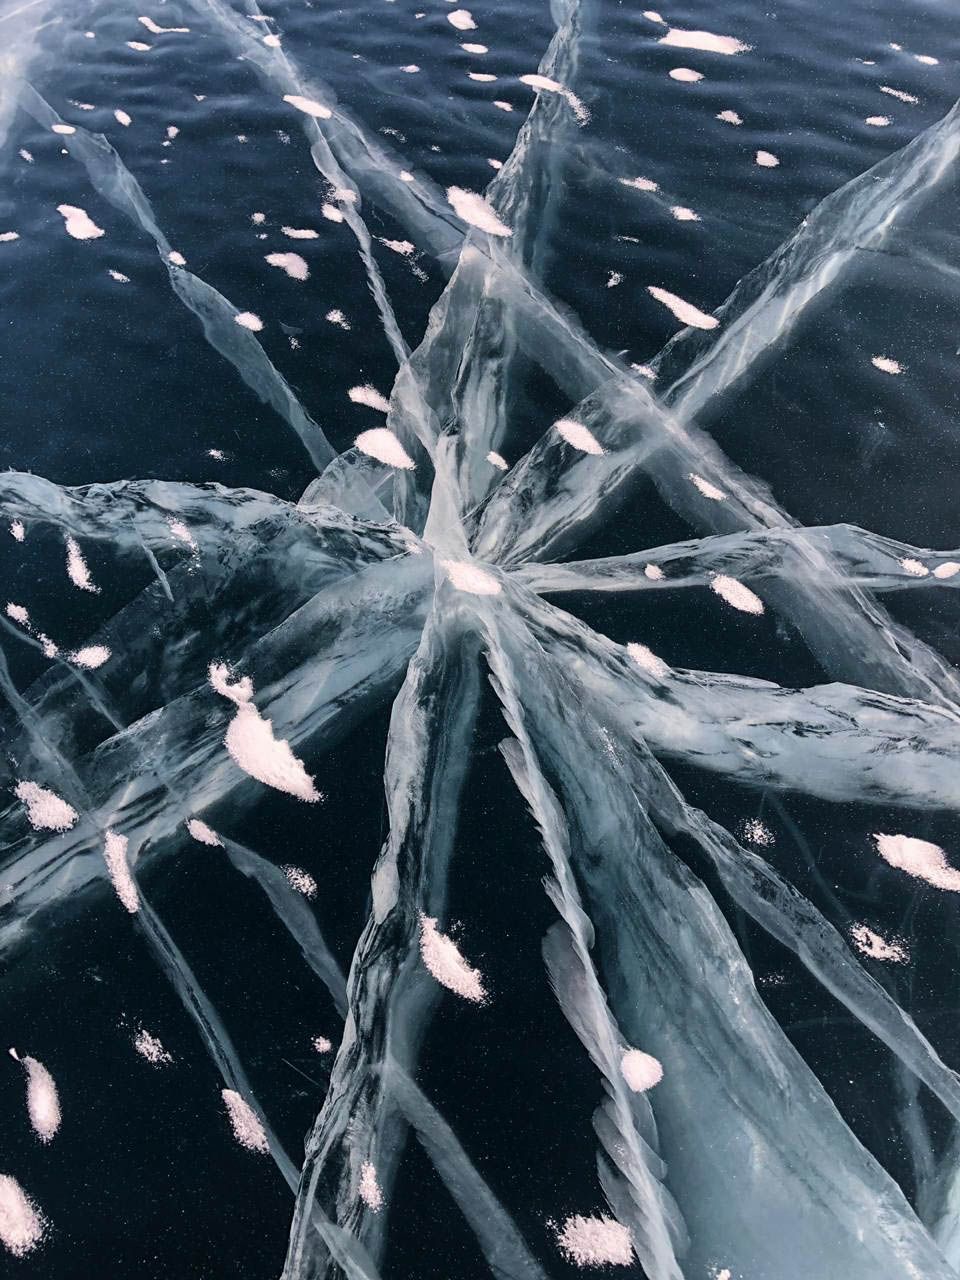 ледяные узоры (фото не моё) озеро Байкал, Россия